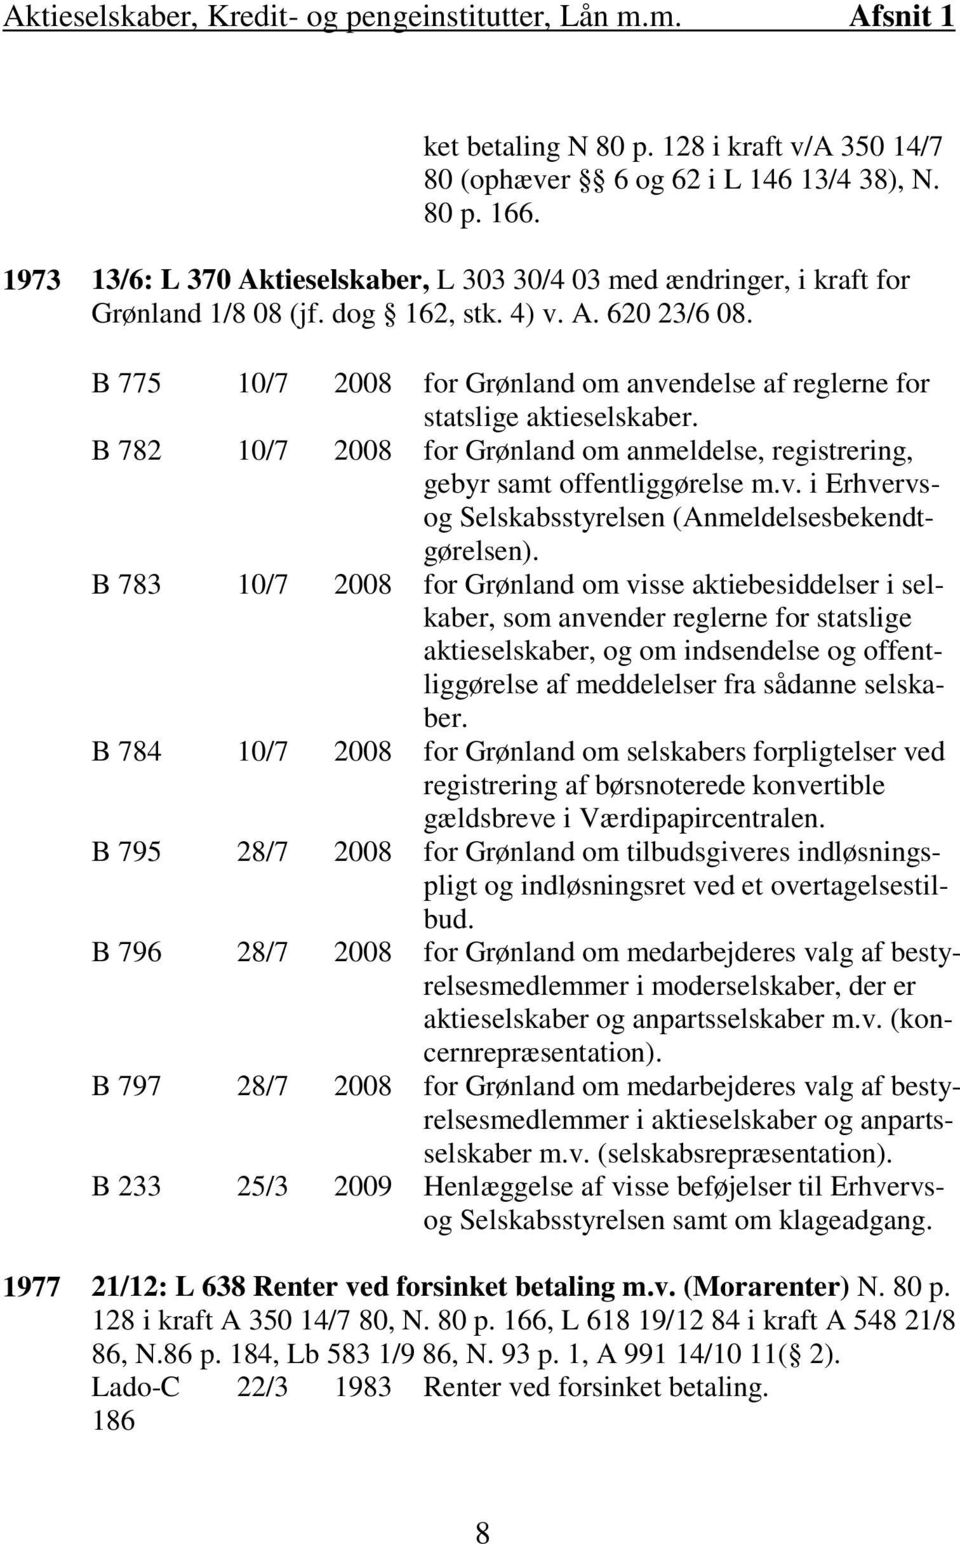 B 775 10/7 2008 for Grønland om anvendelse af reglerne for statslige aktieselskaber. B 782 10/7 2008 for Grønland om anmeldelse, registrering, gebyr samt offentliggørelse m.v. i Erhvervsog Selskabsstyrelsen (Anmeldelsesbekendtgørelsen).